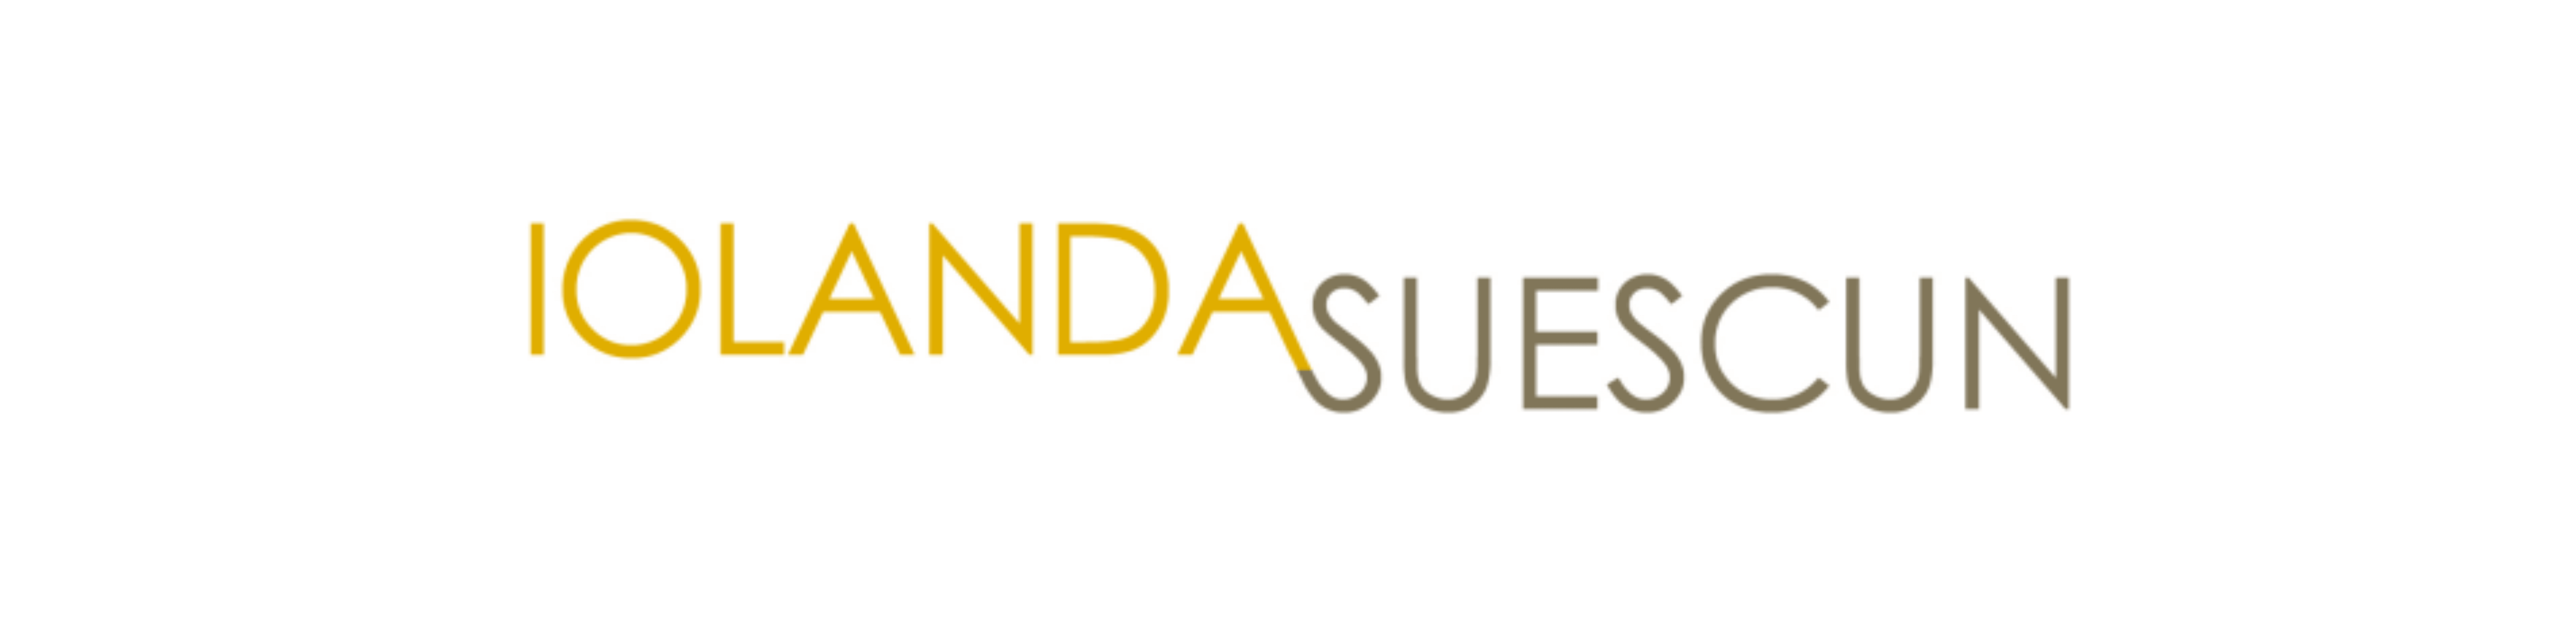 Iolanda Suescun logo